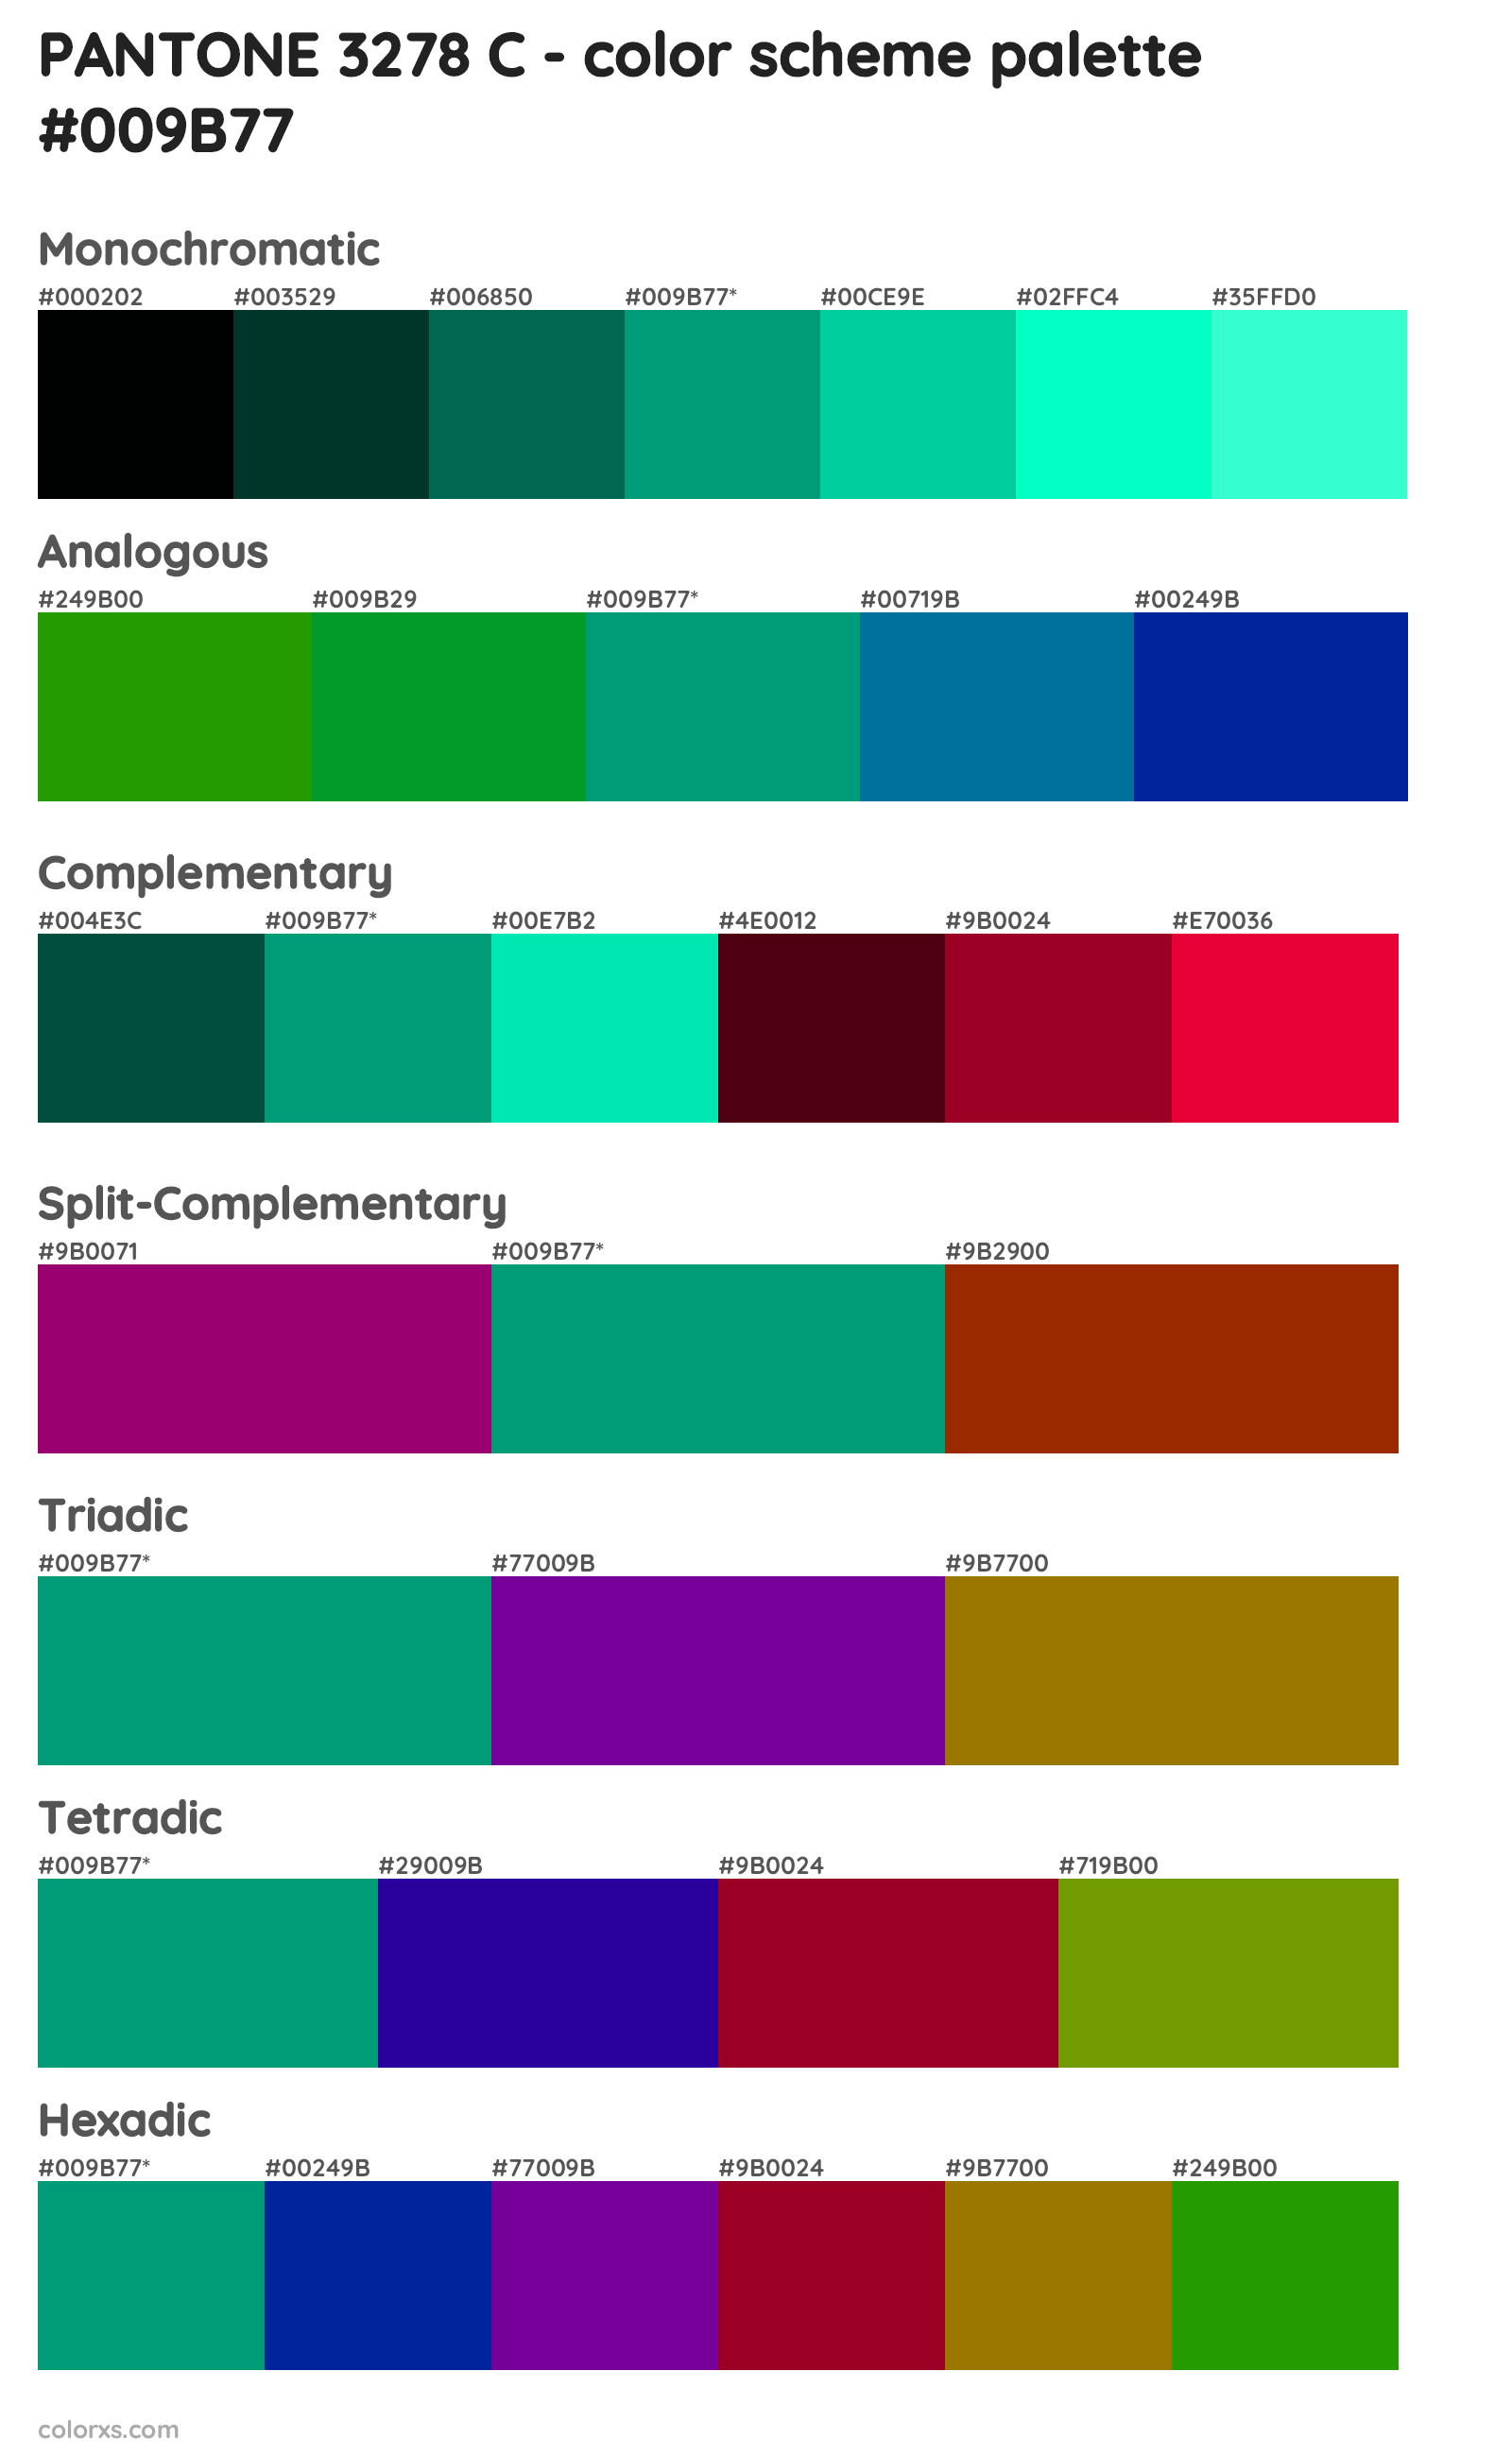 PANTONE 3278 C Color Scheme Palettes